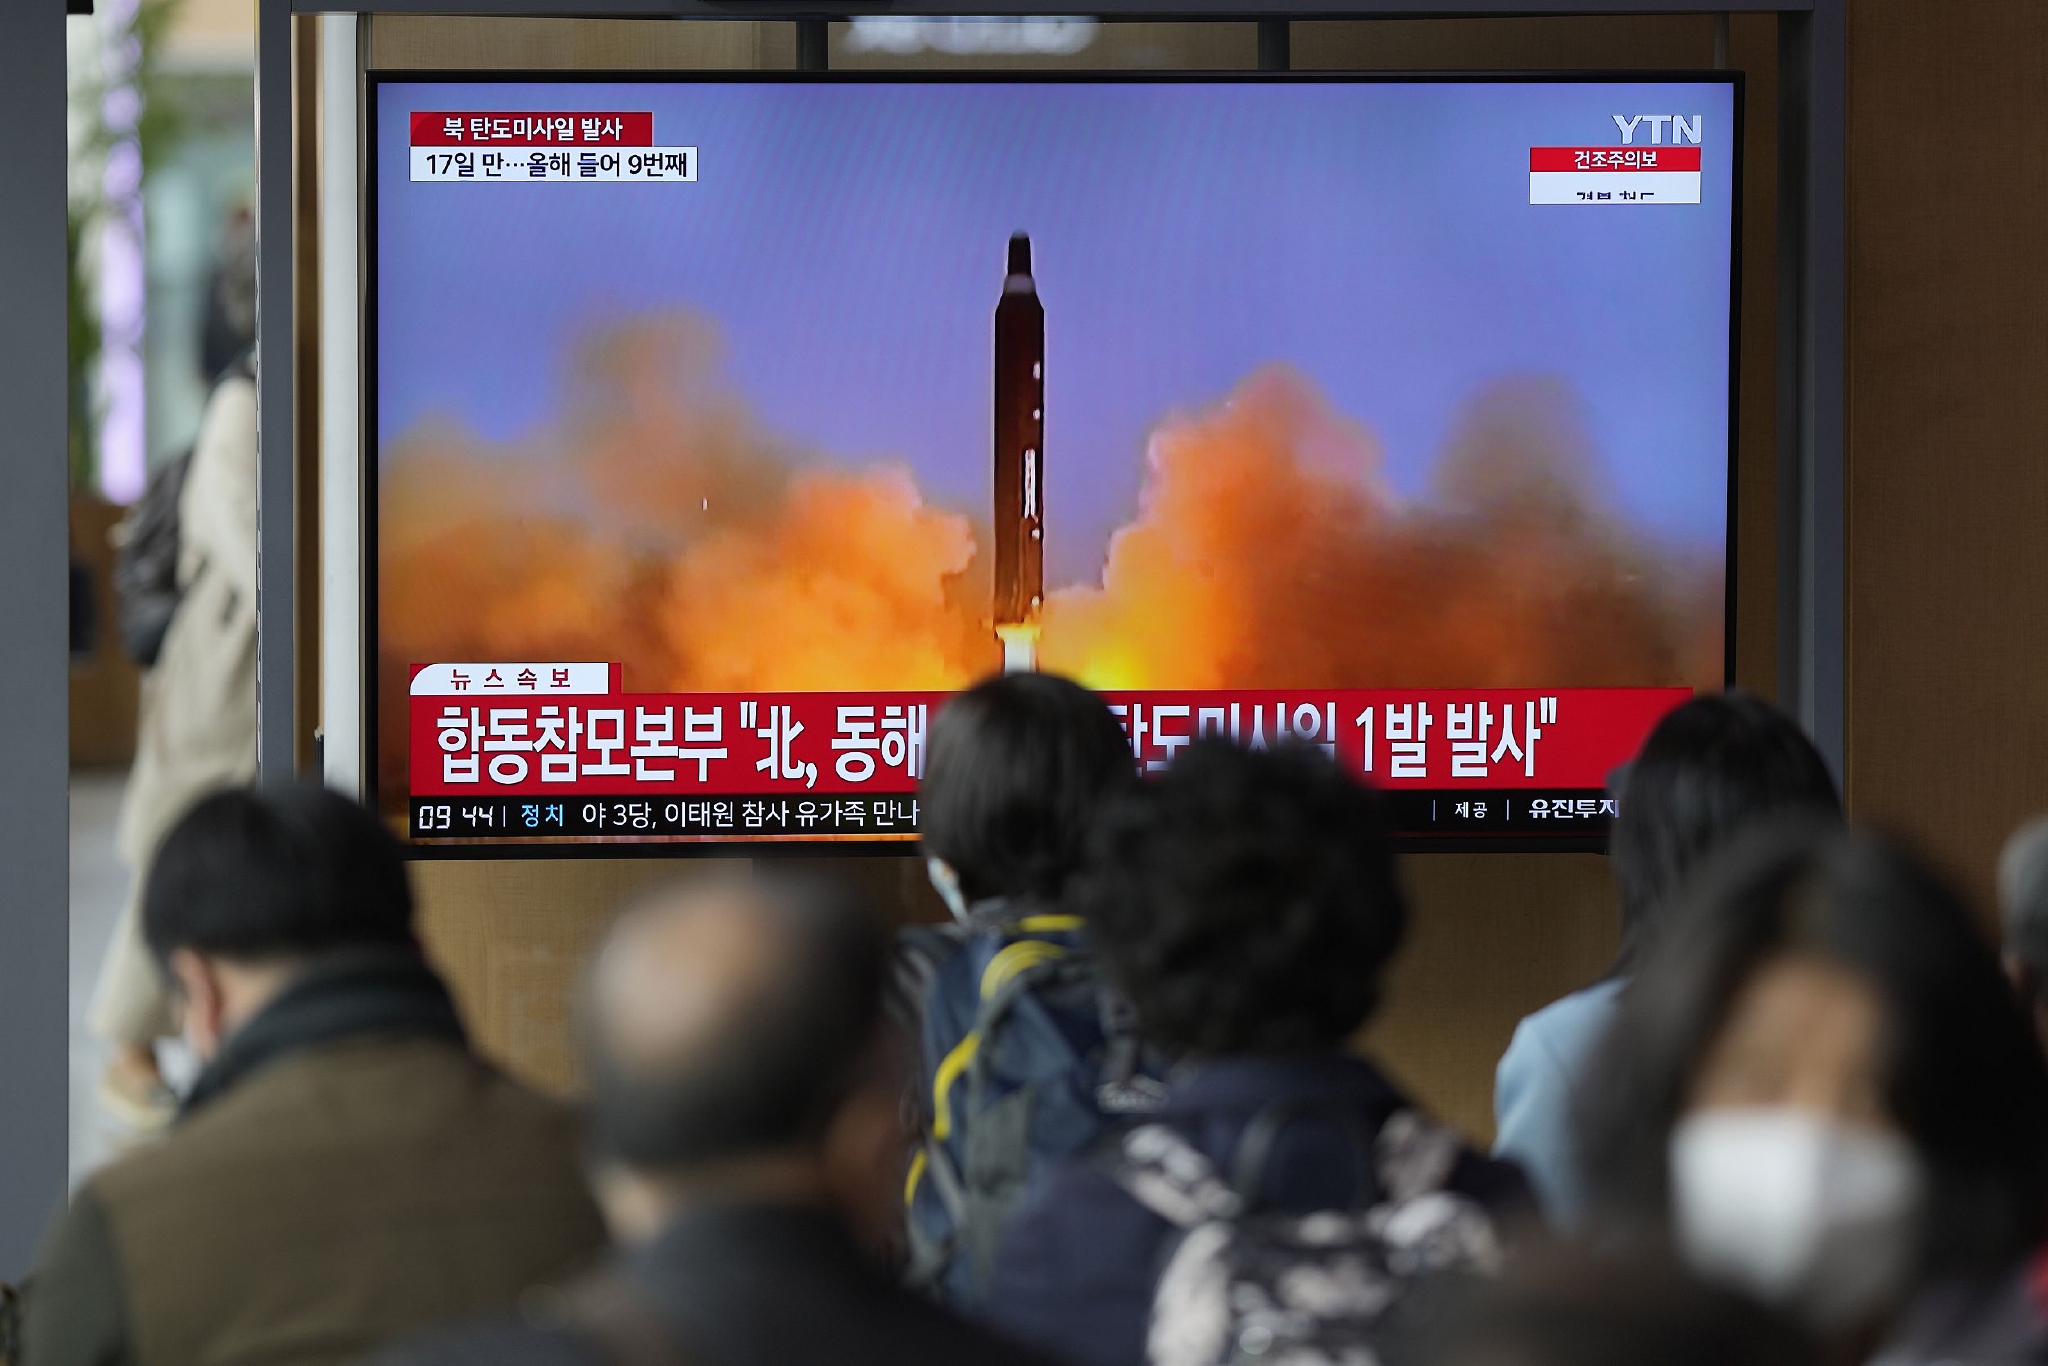 当地时间2023年4月13日，韩国首尔火车站，电视屏幕上在播放朝鲜发射导弹的新闻片段。 视觉中国 图